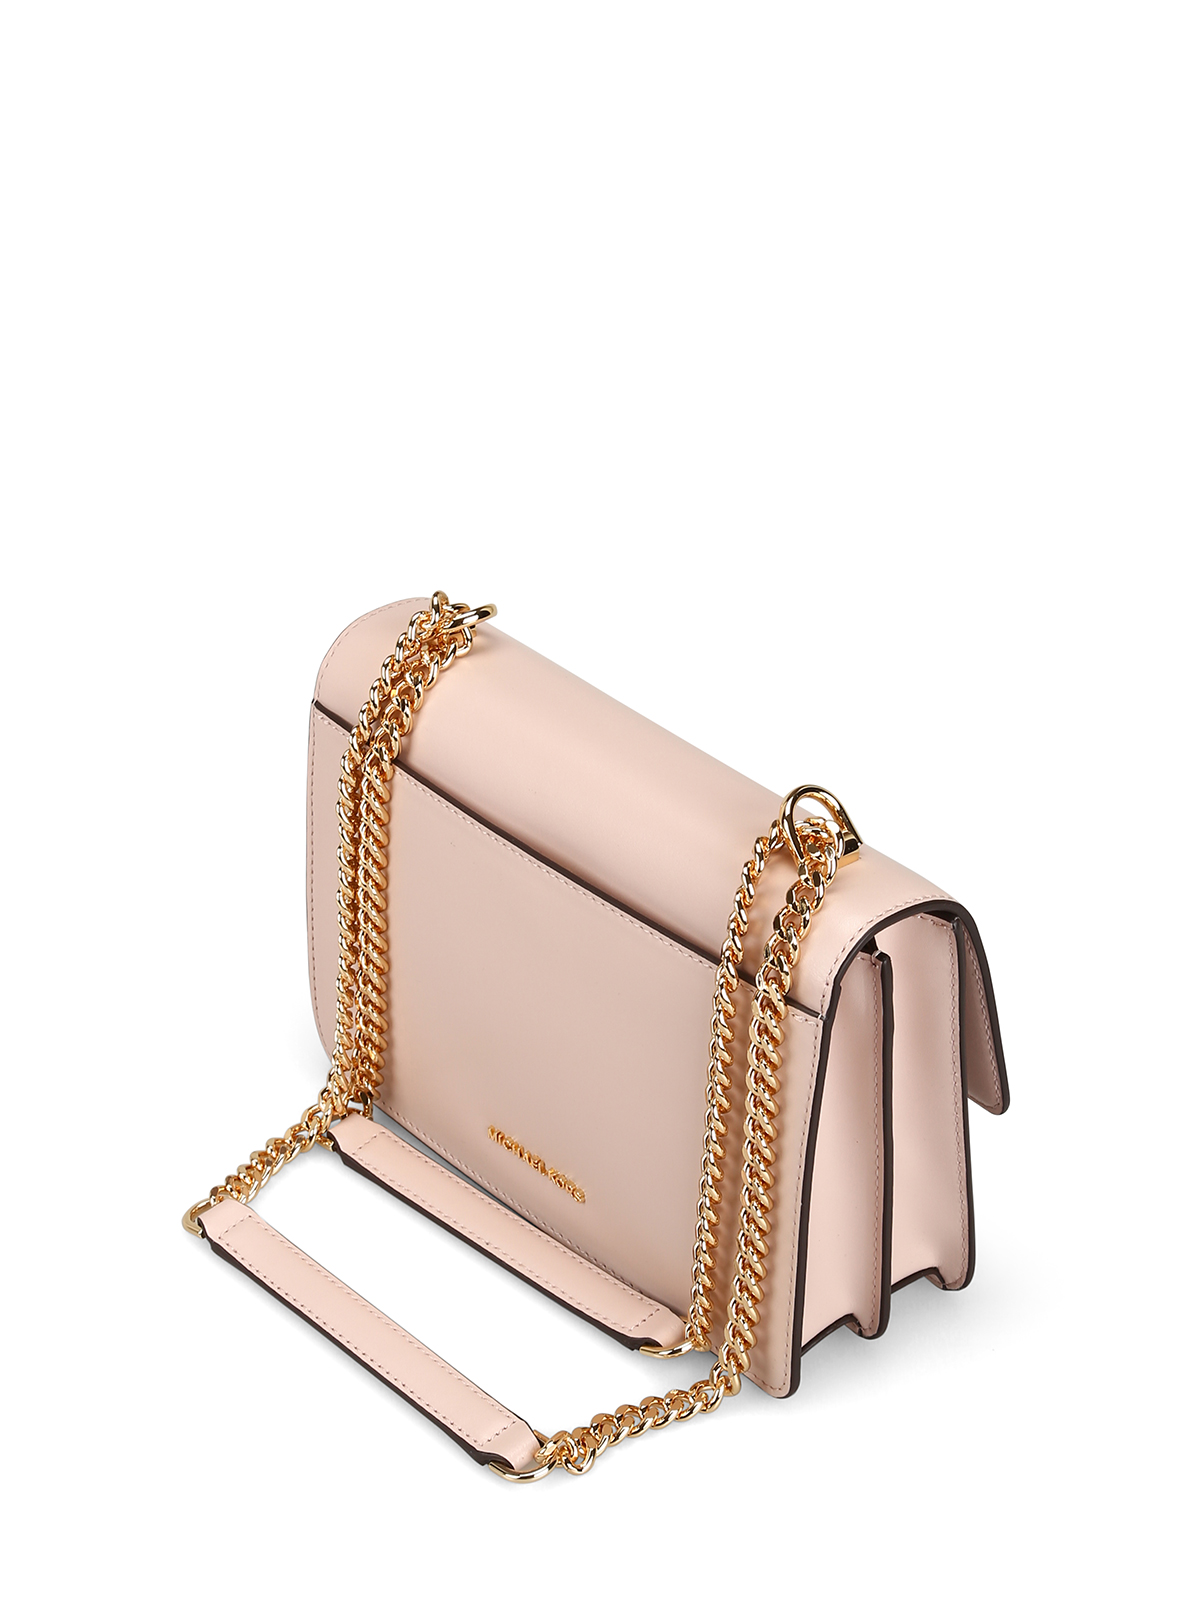 Michael Kors Women Large Tote Bag Handbag Purse Laptop Shoulder Satchel Pink  MK  Michael Kors bag   Fash Brands